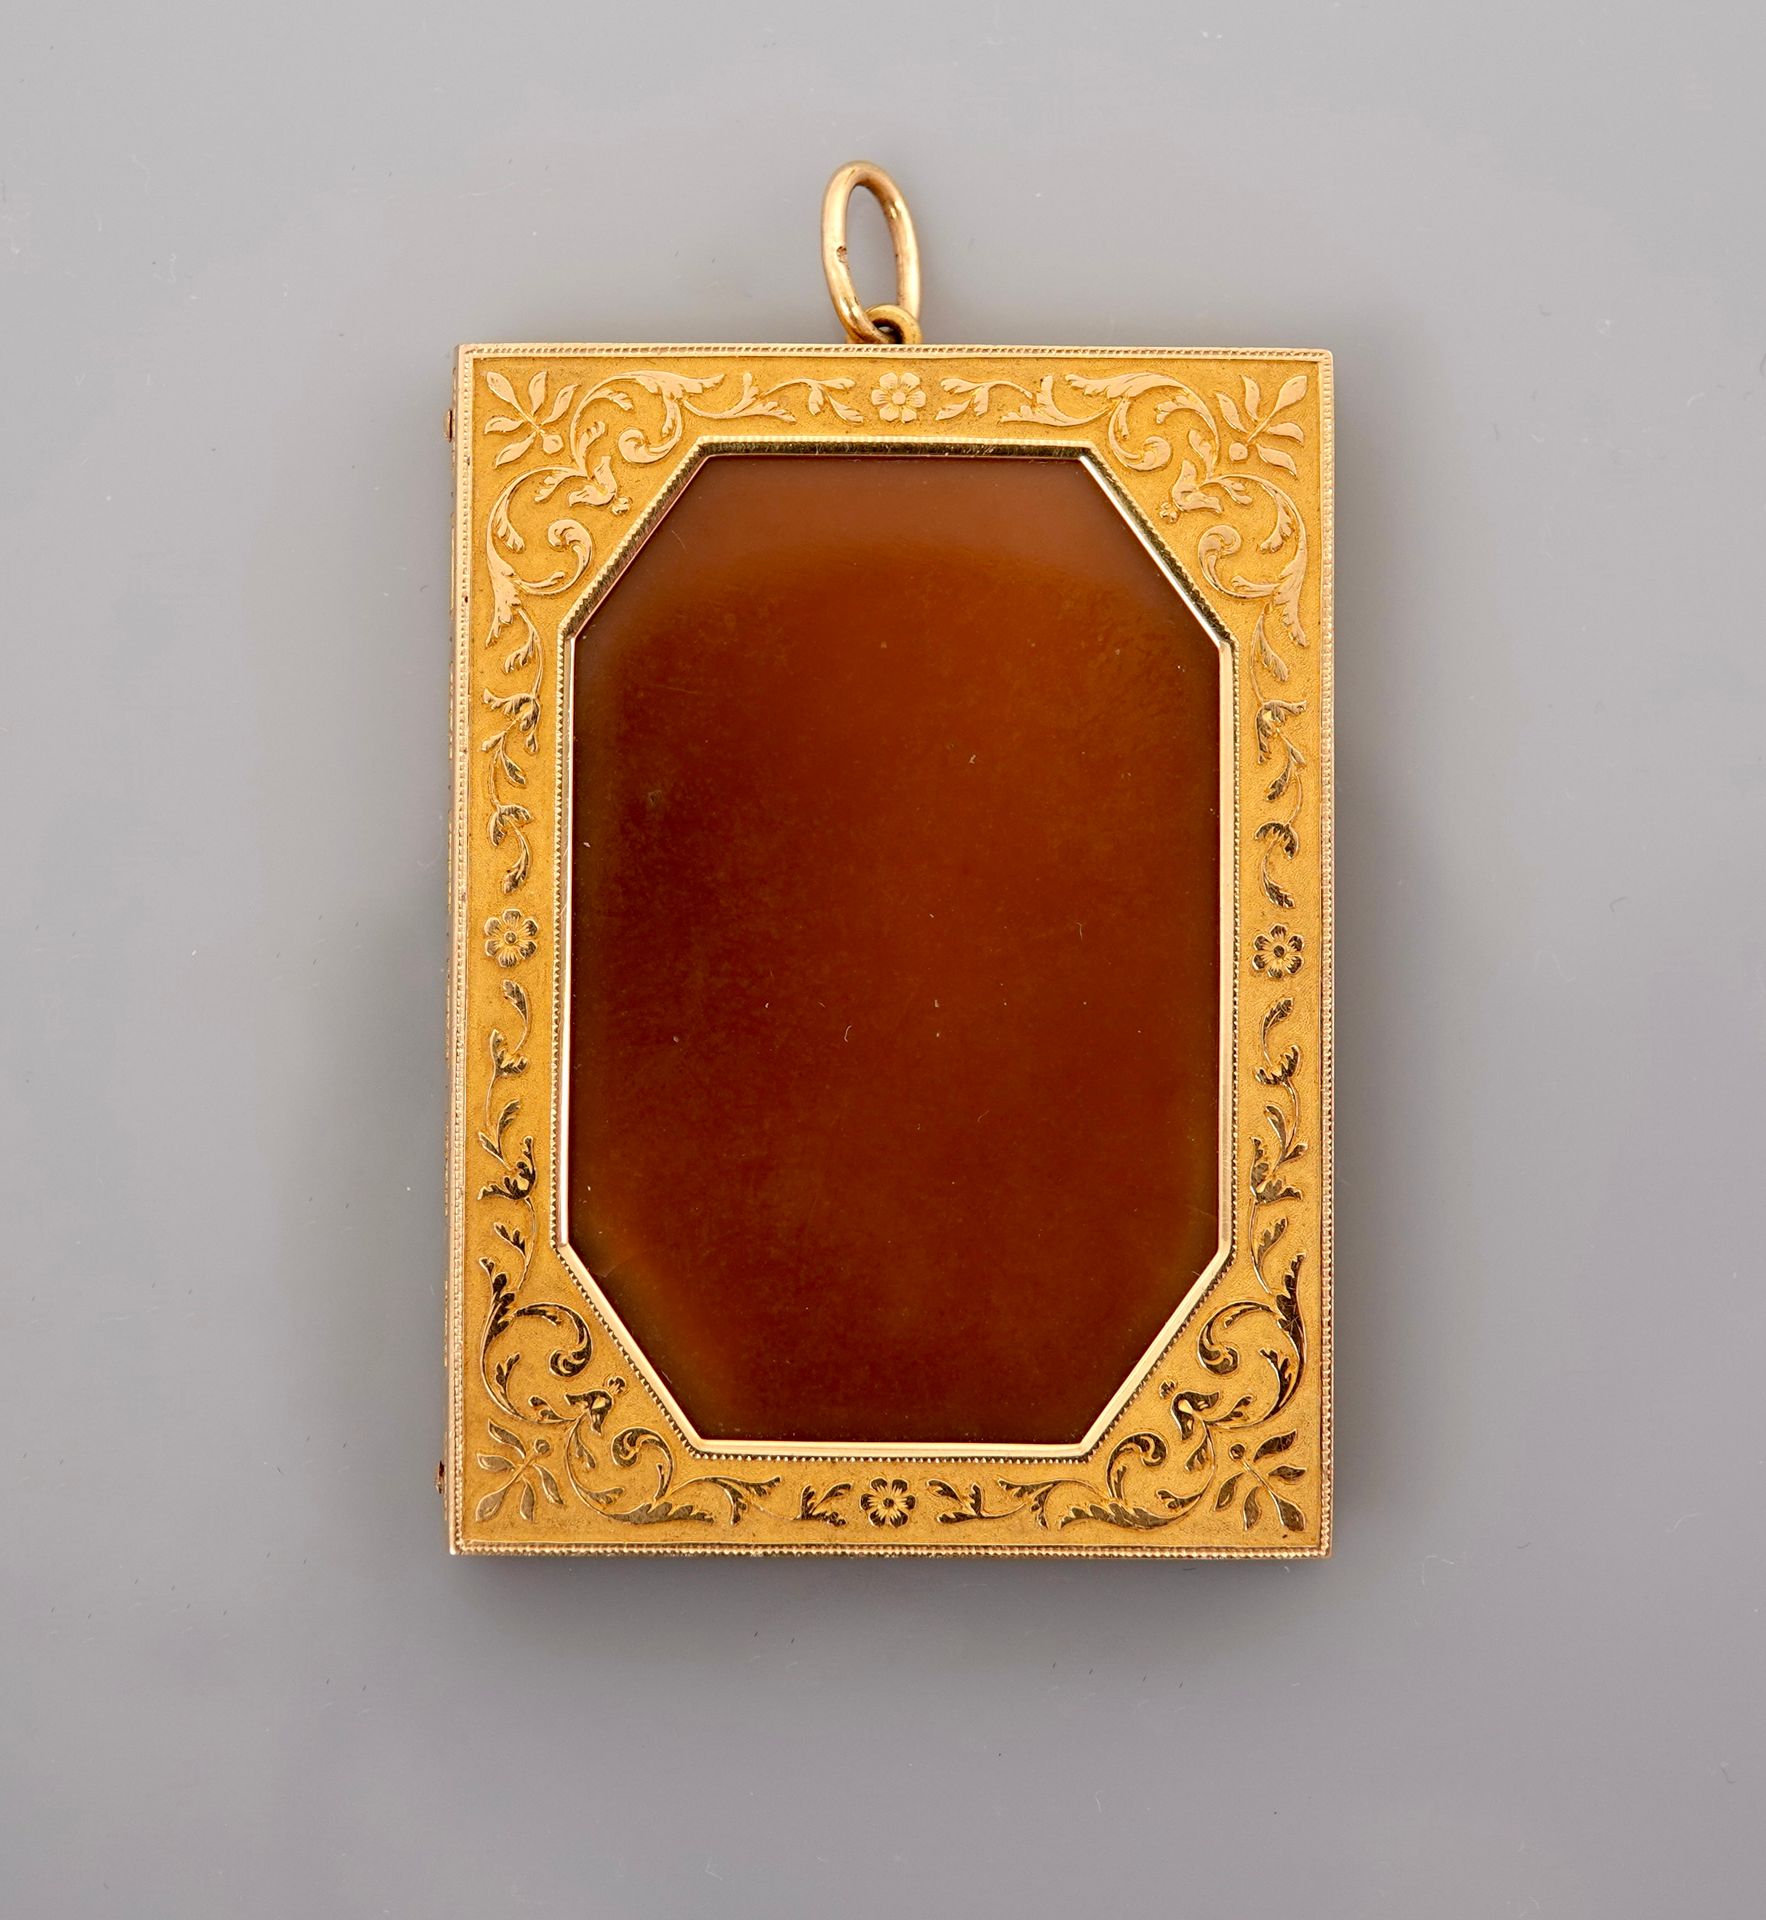 Null 代表一本合上的书的黄金吊坠，750毫米，覆膜并刻有浮雕和刻痕，镶嵌两颗棕色玛瑙（其中一颗碎裂），尺寸为5 x 3.6厘米，19世纪，重量：毛重29.2&hellip;